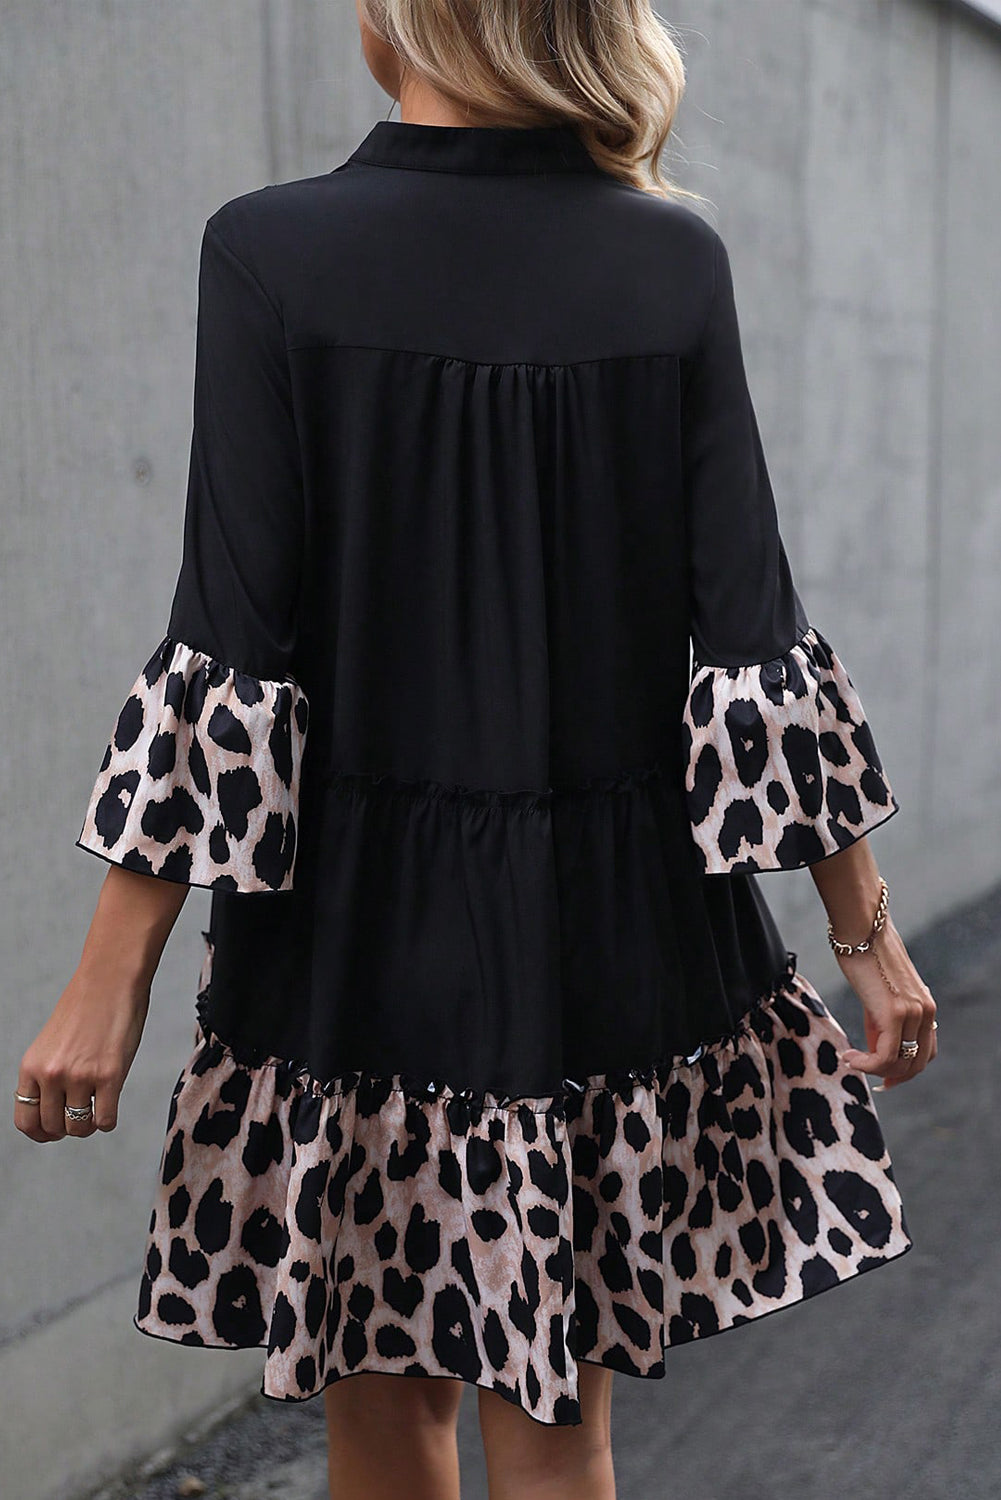 Schwarzes, ausgestelltes Kleid mit Leopardenbesatz und V-Ausschnitt, Rüschenärmeln